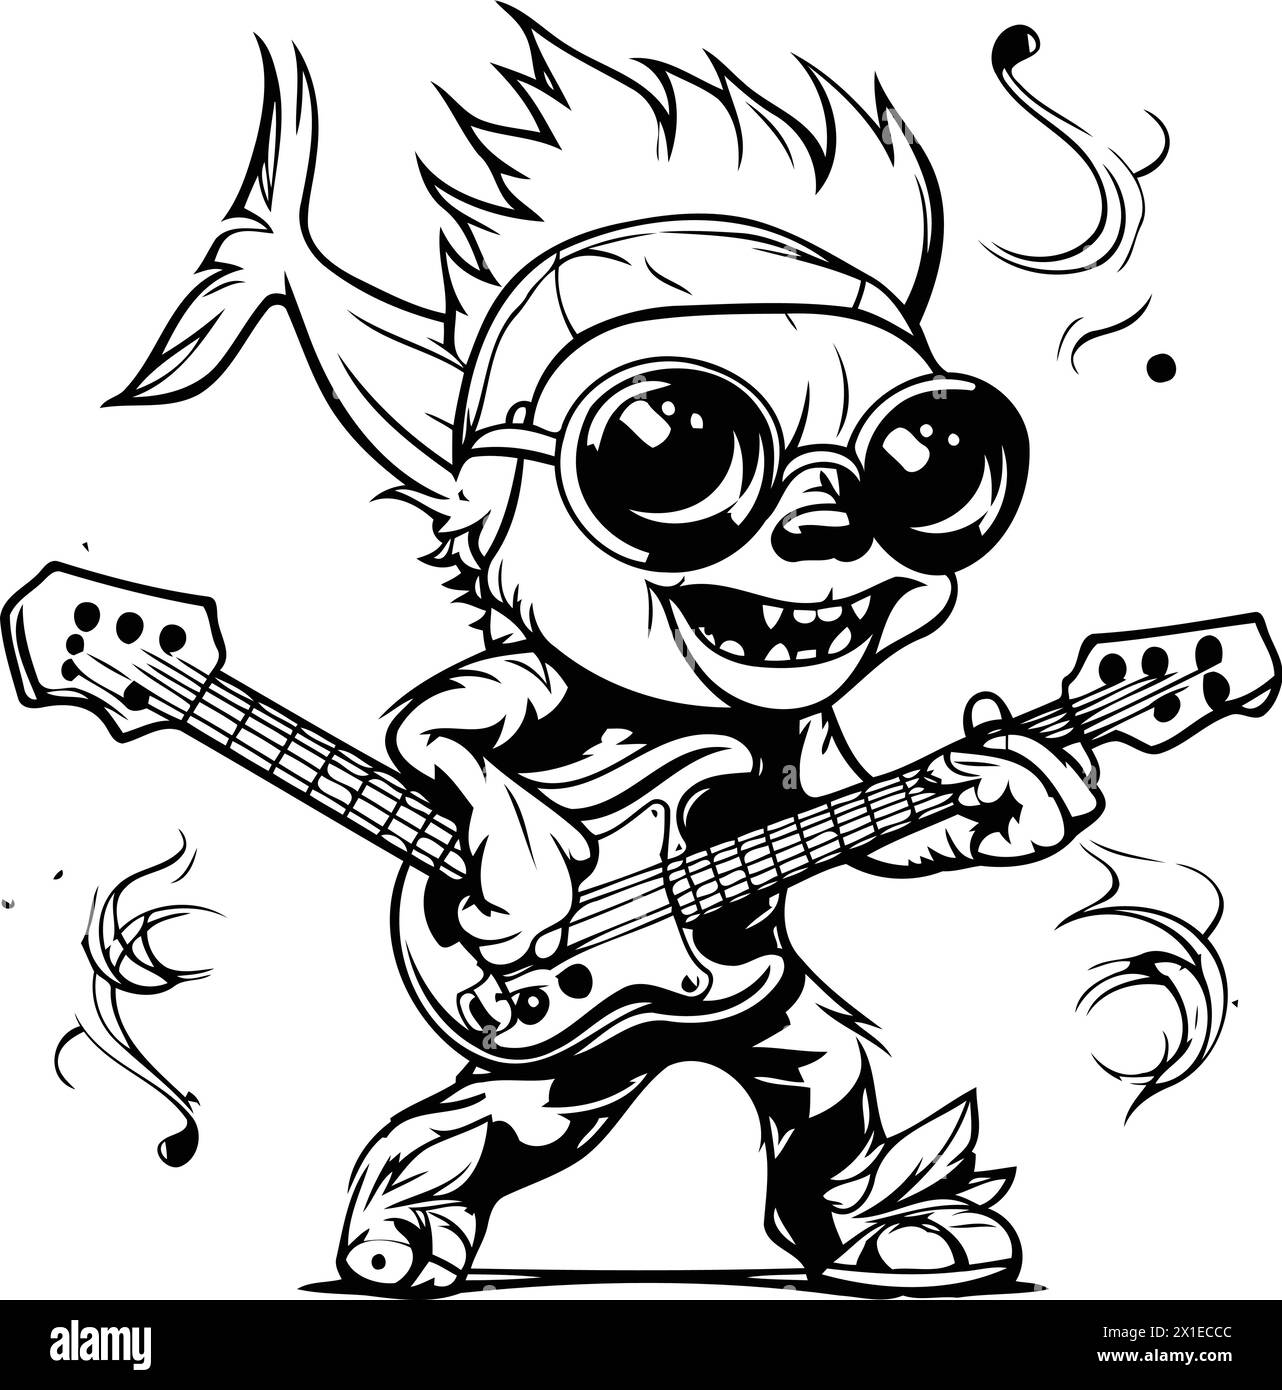 Illustration vectorielle d'un musicien punk rock jouant de la guitare électrique. Style dessin animé. Illustration de Vecteur